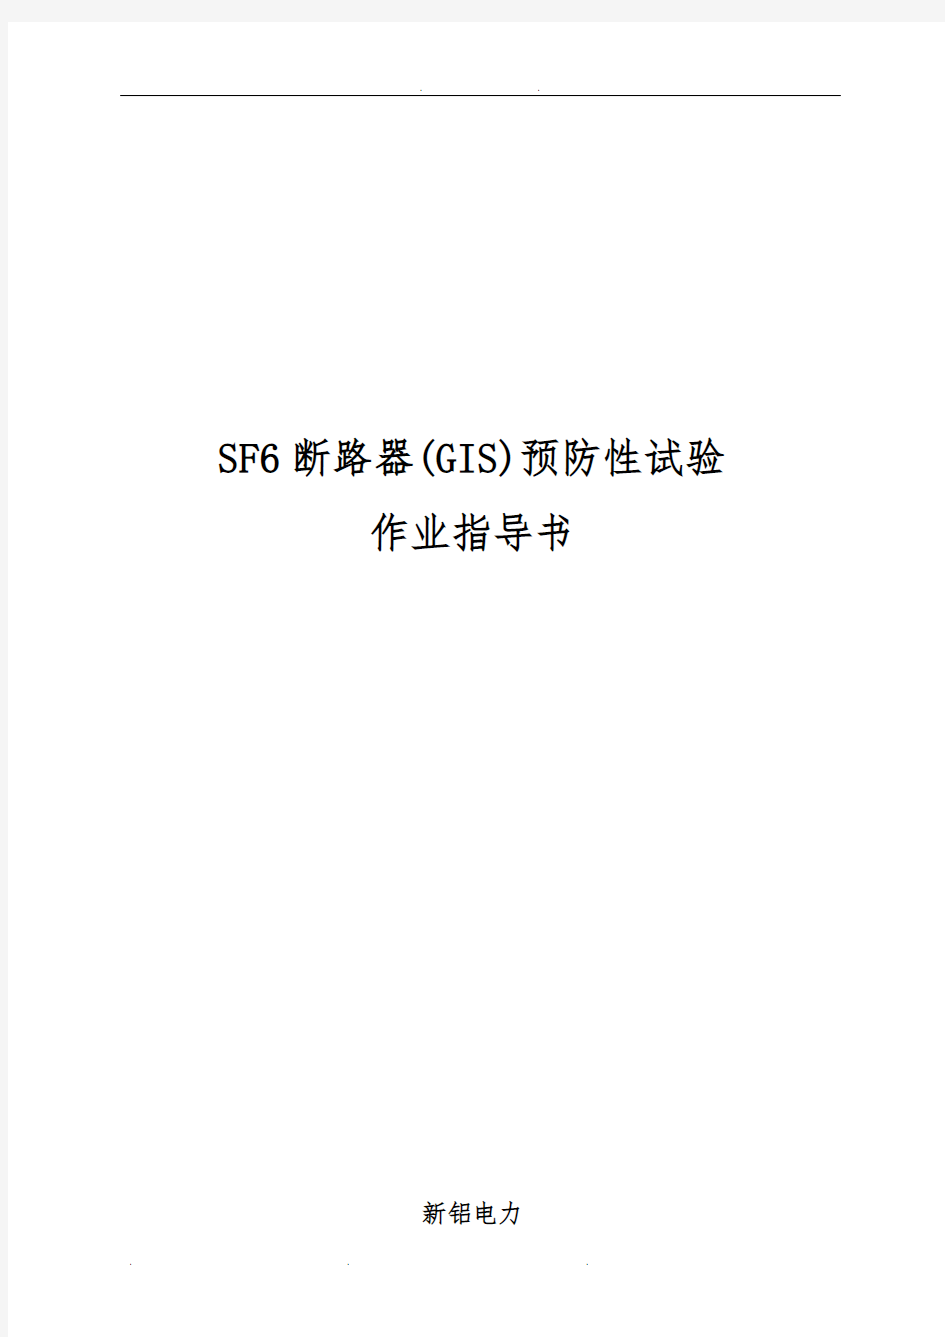 SF6断路器(含GIS)预防性试验作业指导书[QXL-2015]